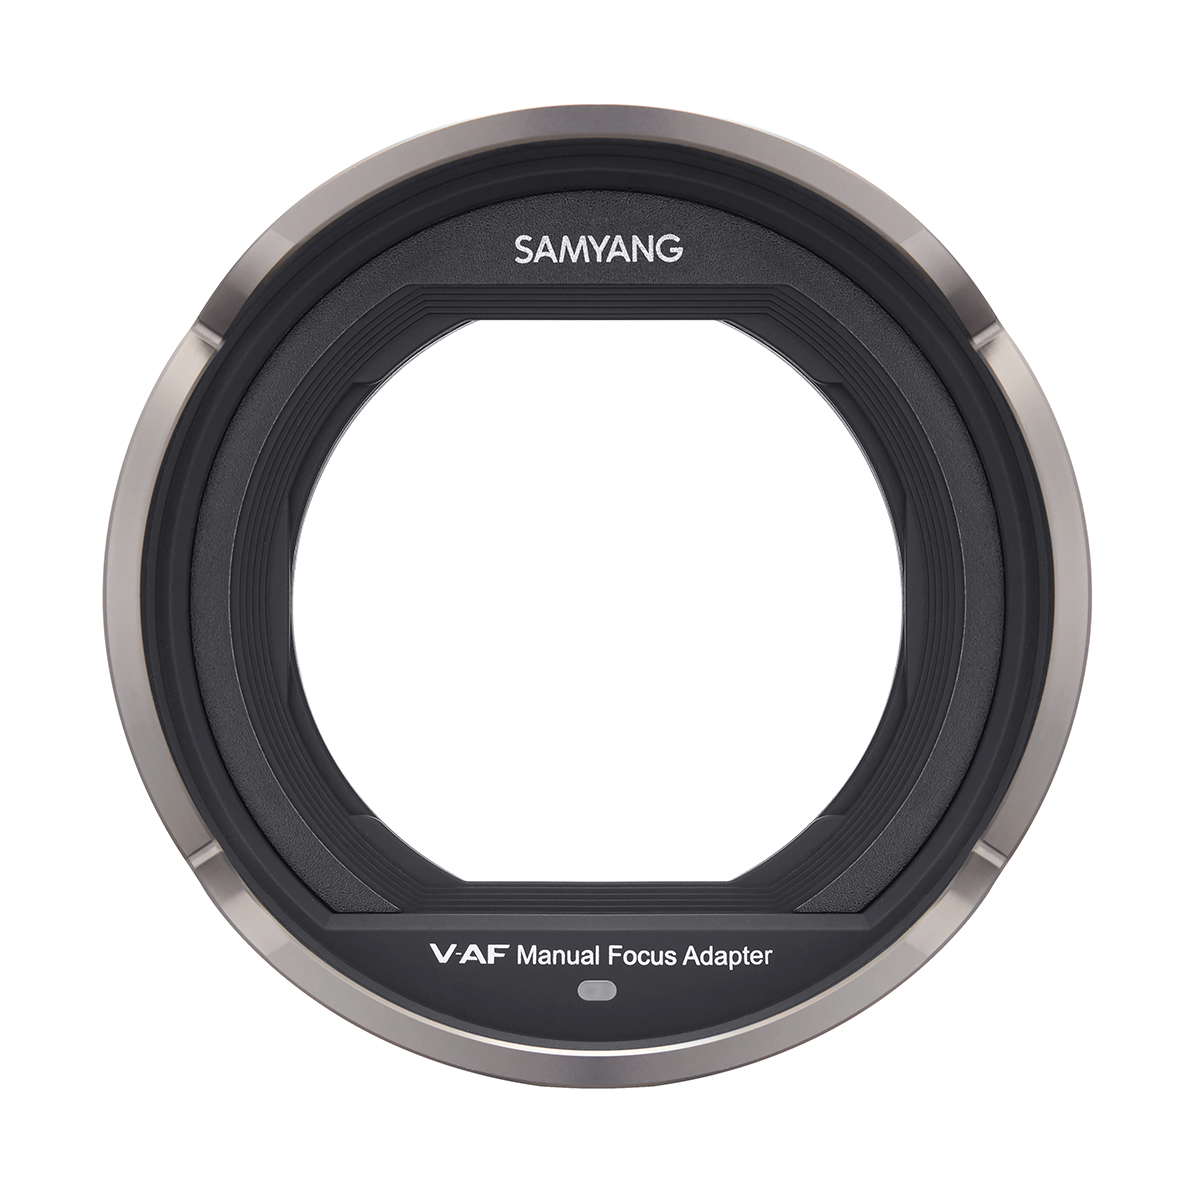 Samyang MF Adapter for V-AF series (2)